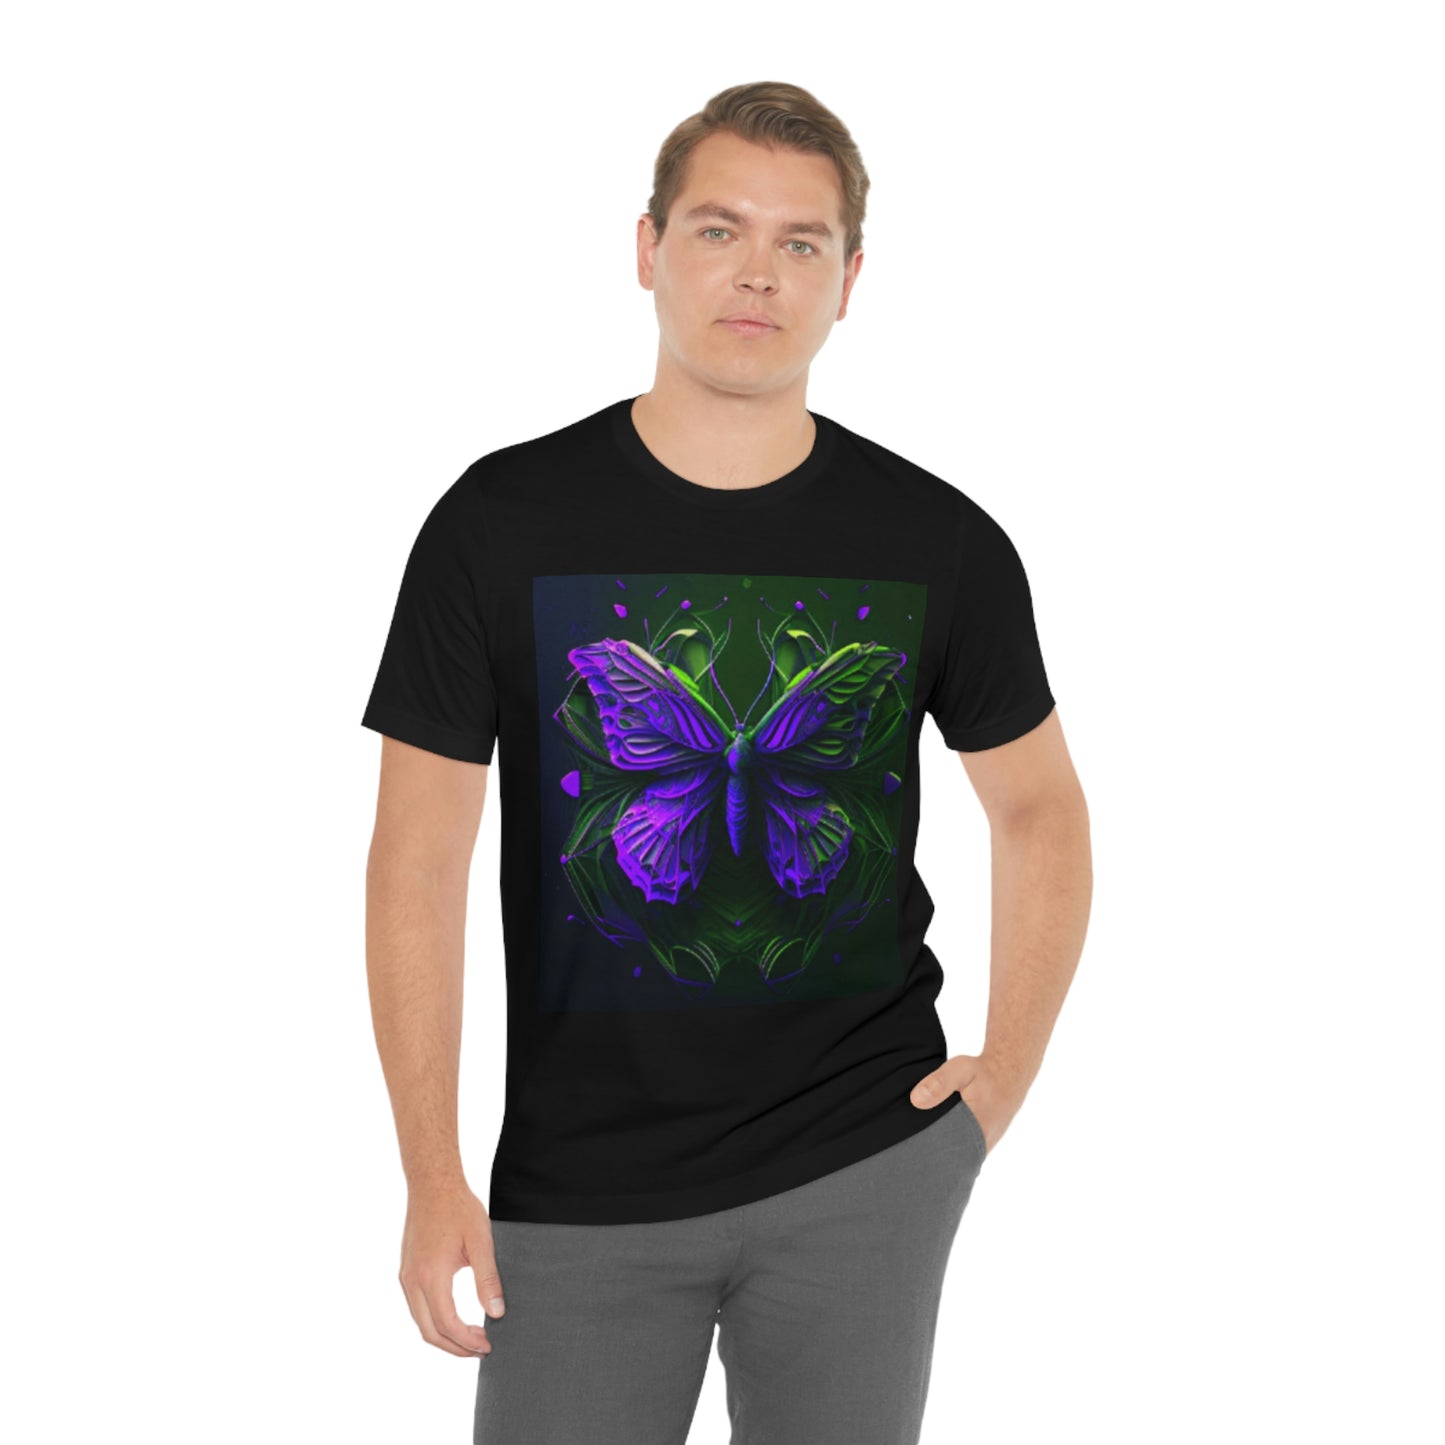 Purple Butterfly - Jersey Short Sleeve Tee